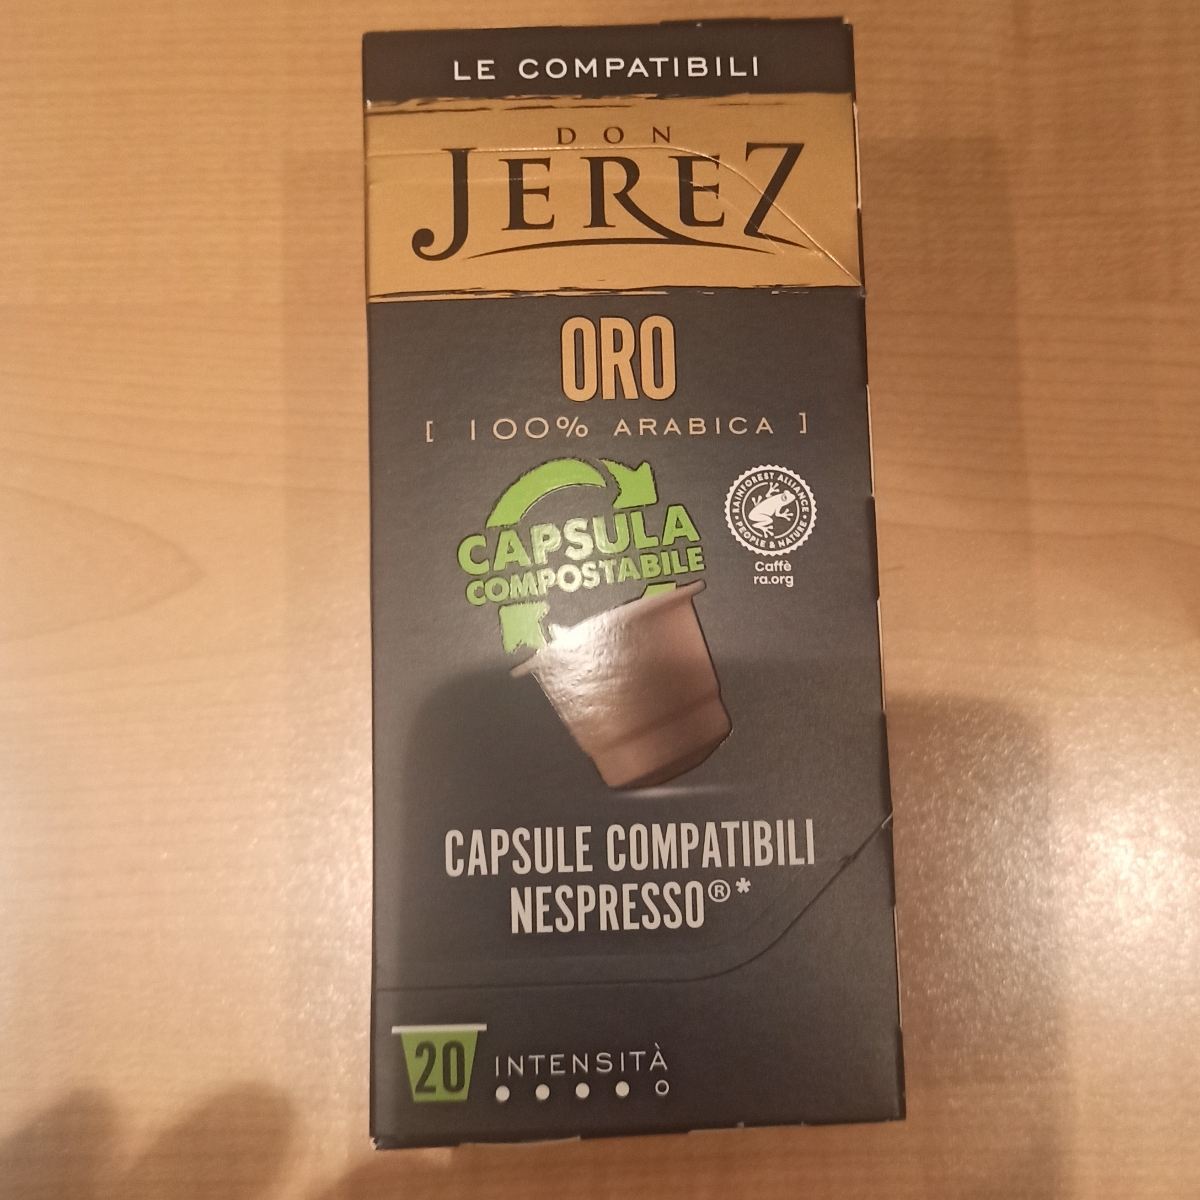 Don Jerez Capsule caffè Review | abillion